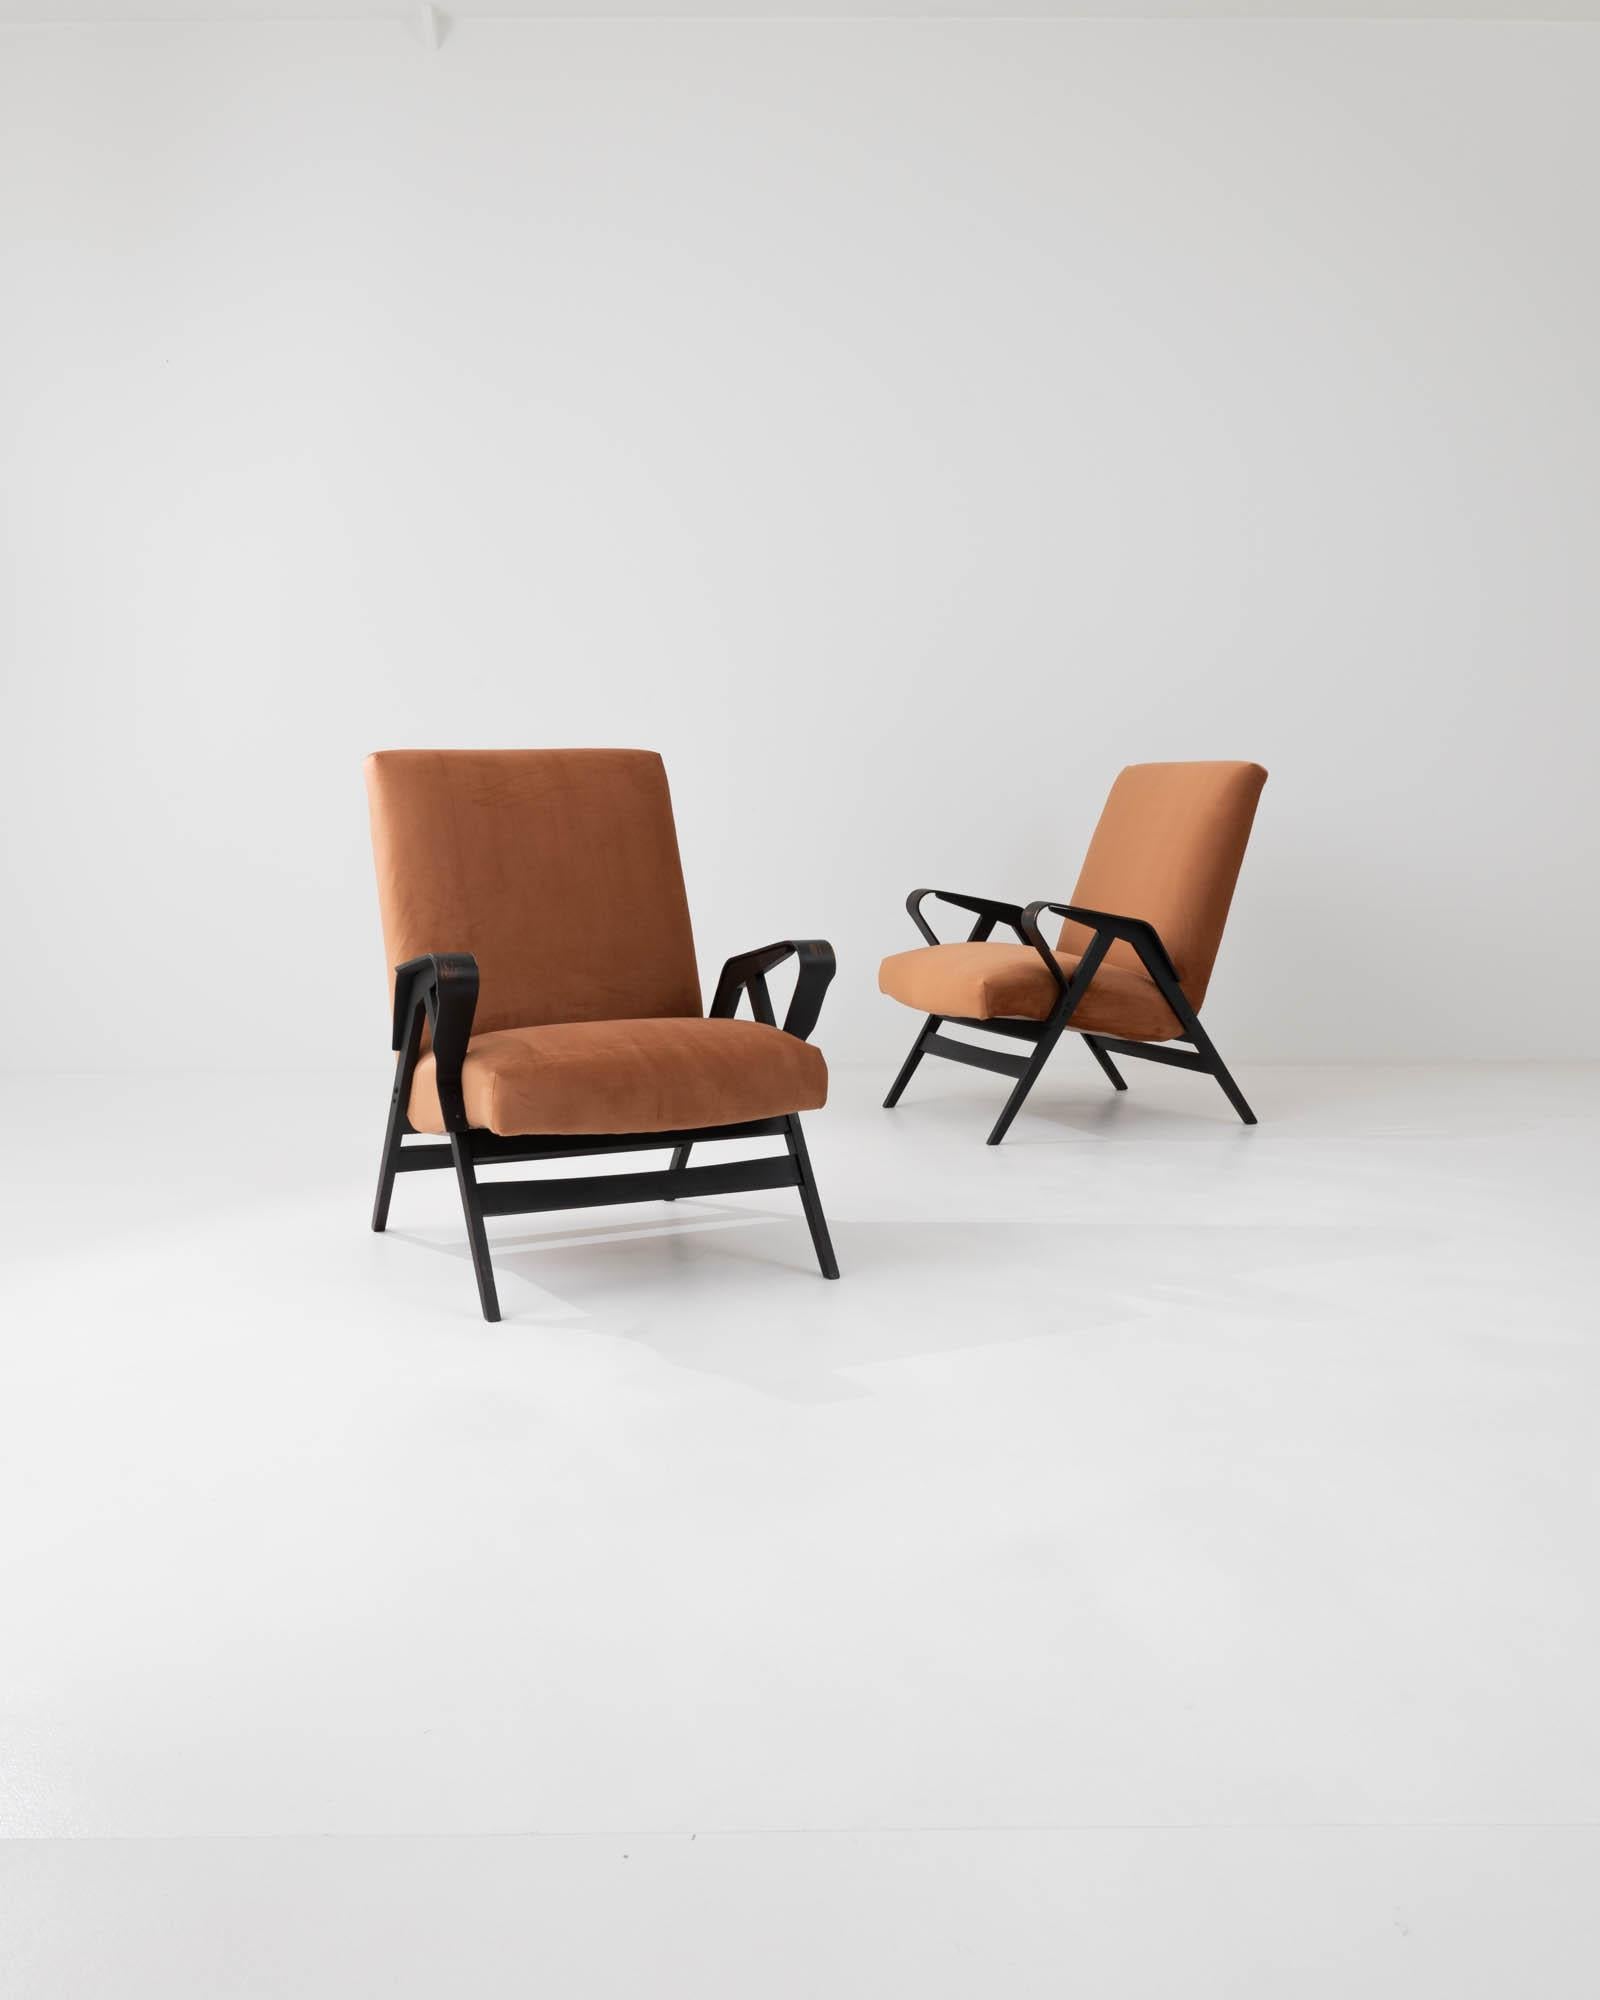 Diese Sessel, die sich durch ihre klaren Linien auszeichnen, die ihre minimalistische Silhouette definieren, wurden von der berühmten tschechischen Marke in den 1960er Jahren hergestellt, wobei das Design František Jirák zugeschrieben wird. Die